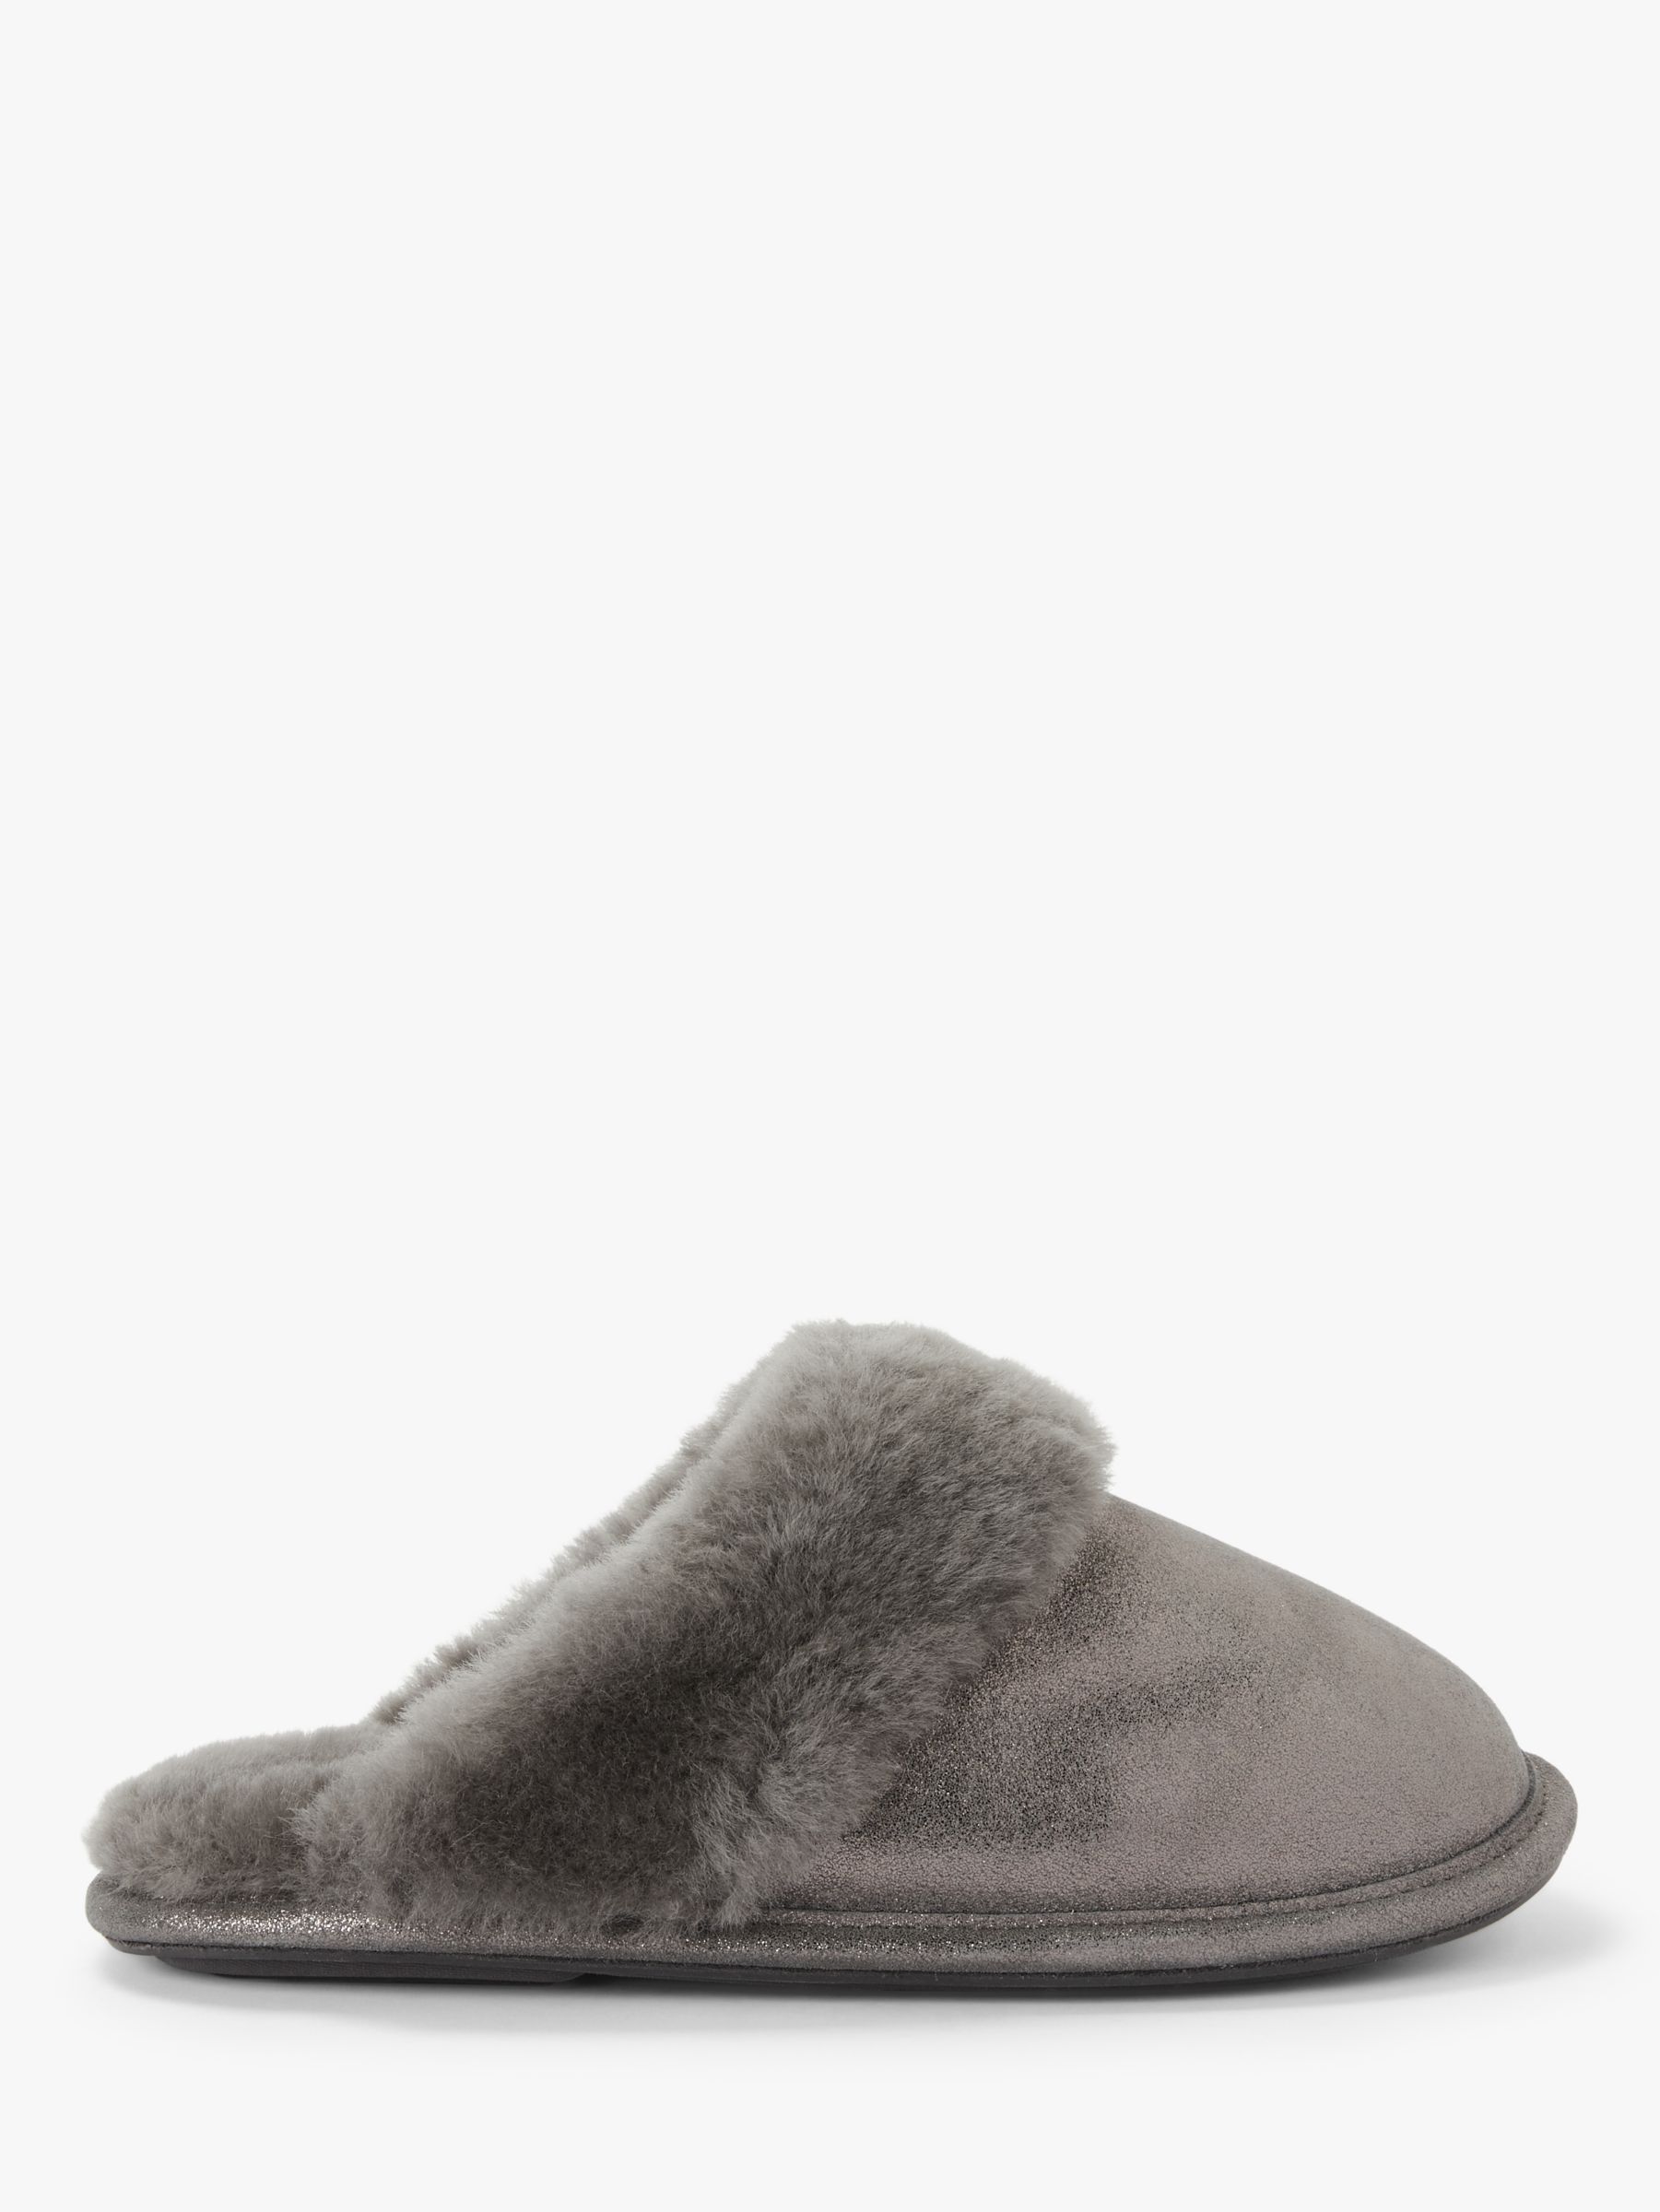 adda slippers ebay